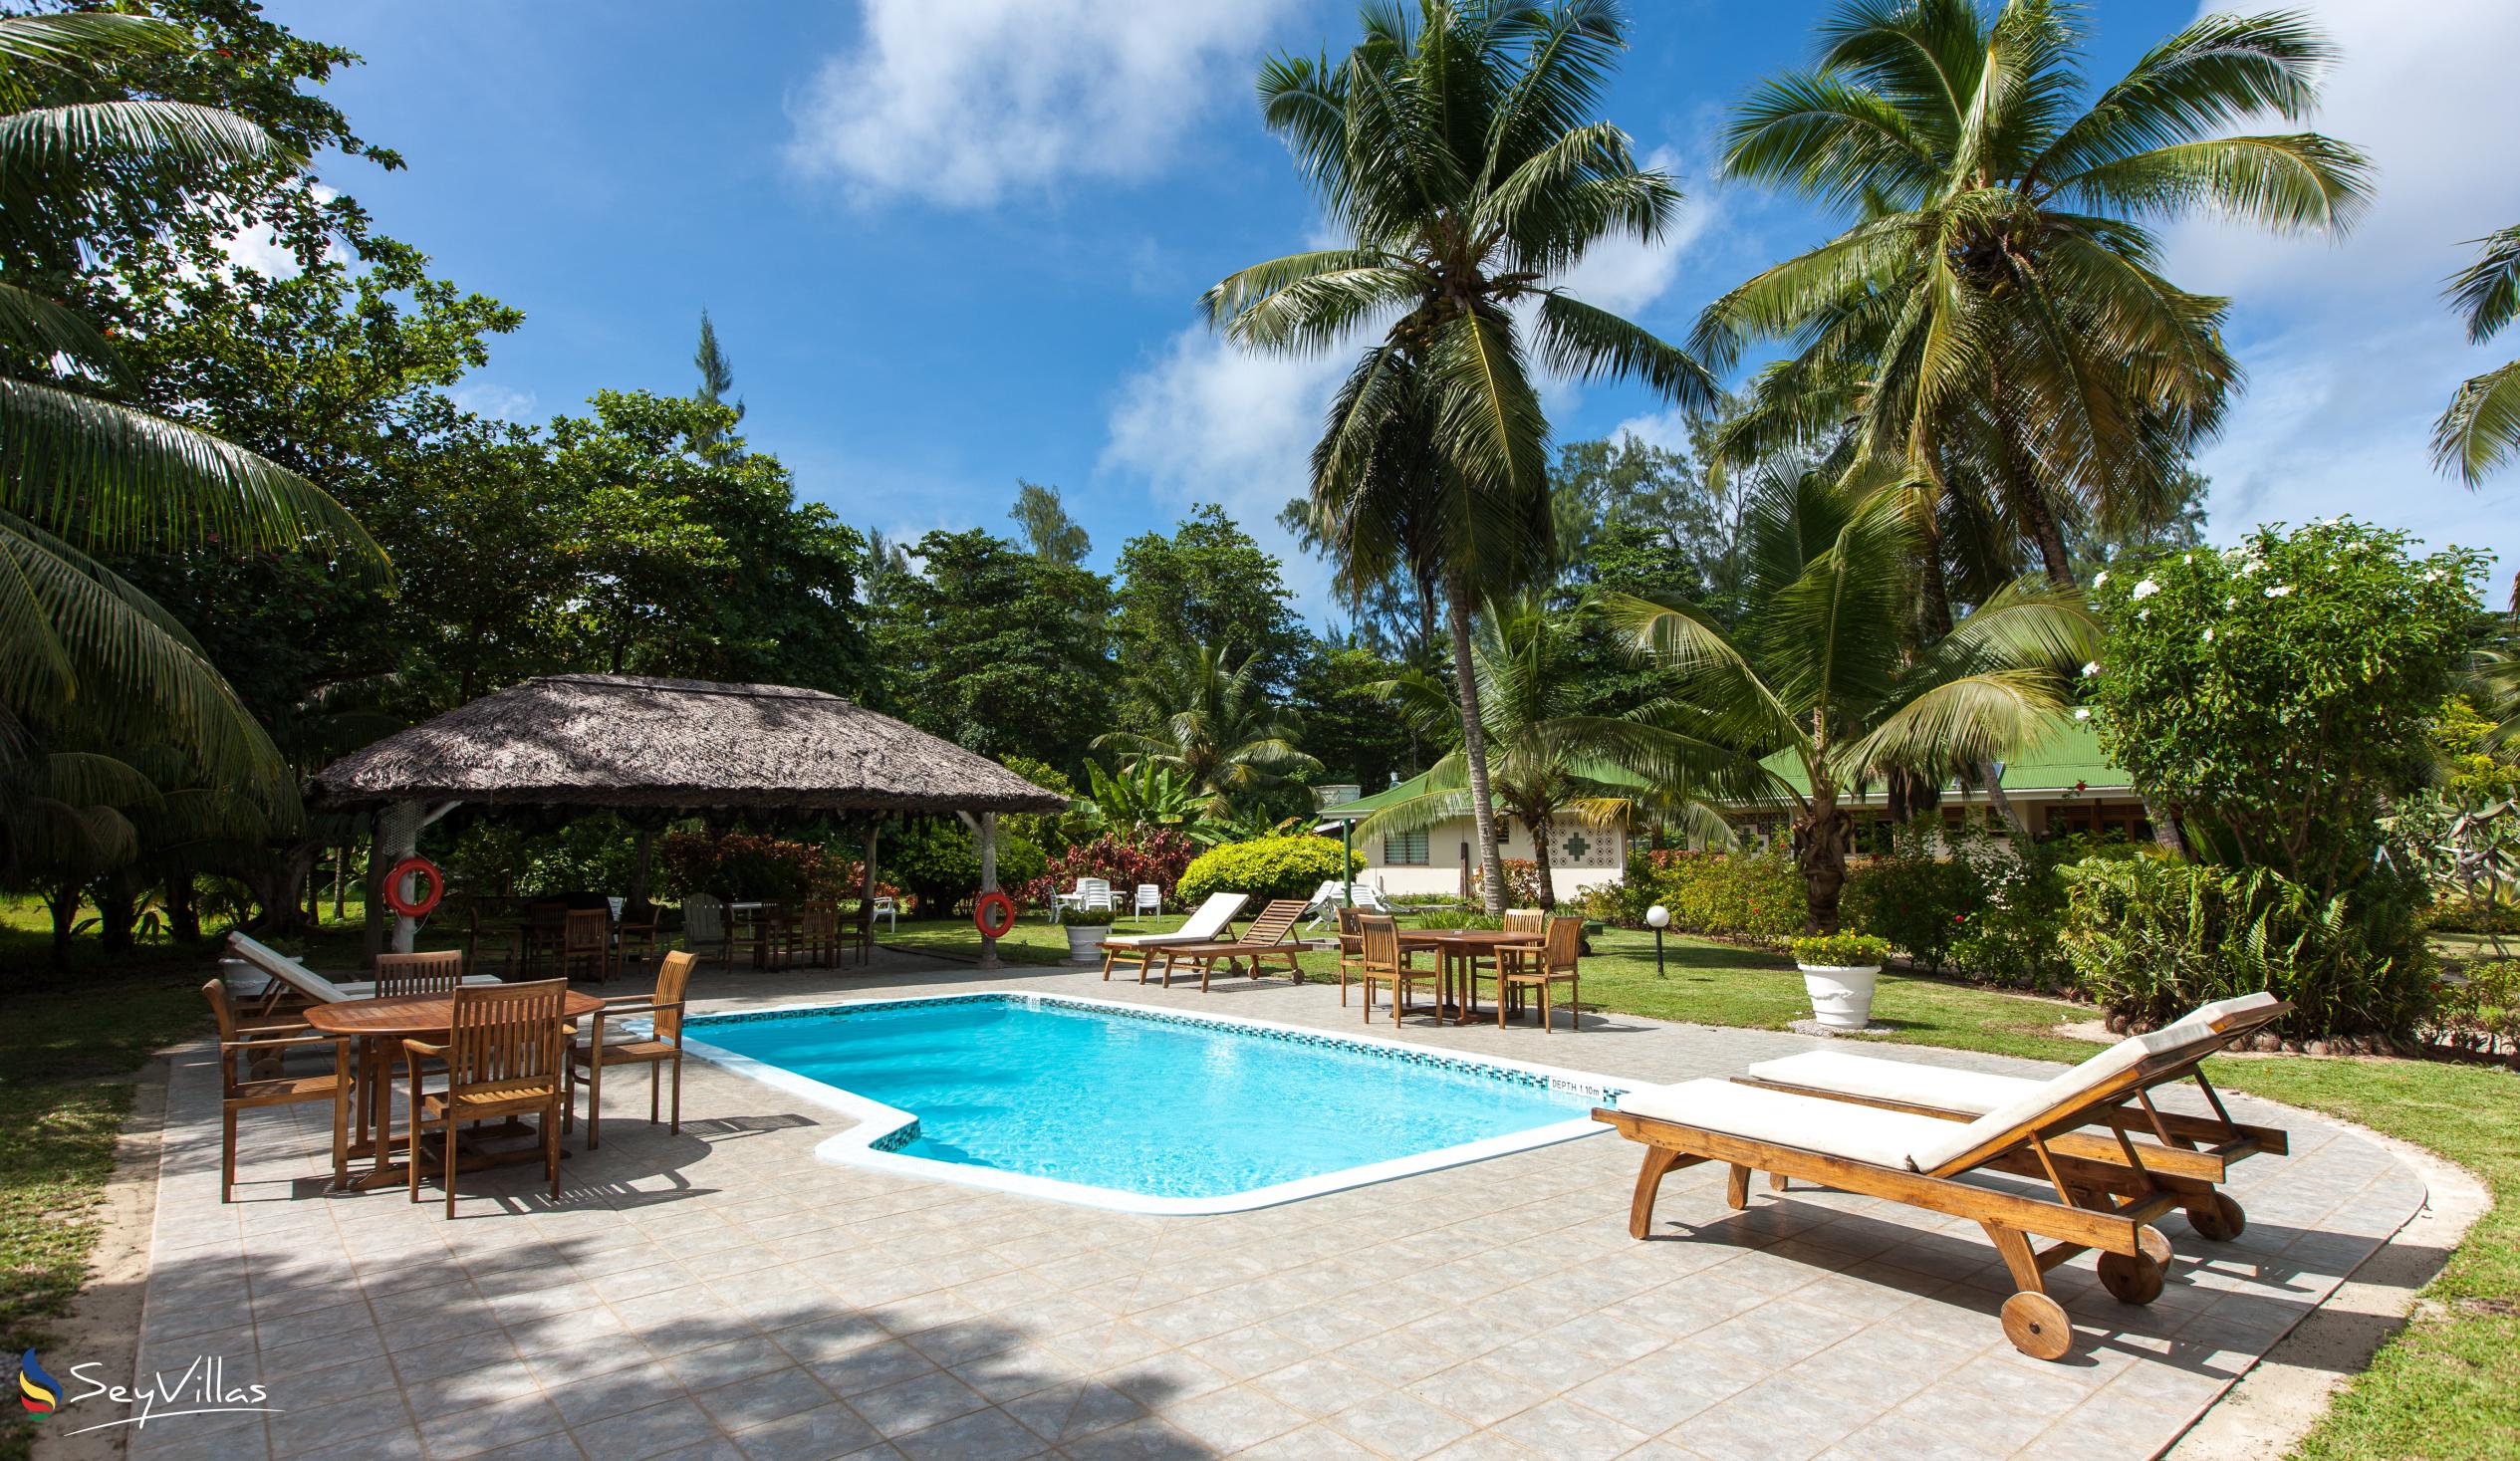 Photo 1: Les Villas D'Or - Outdoor area - Praslin (Seychelles)